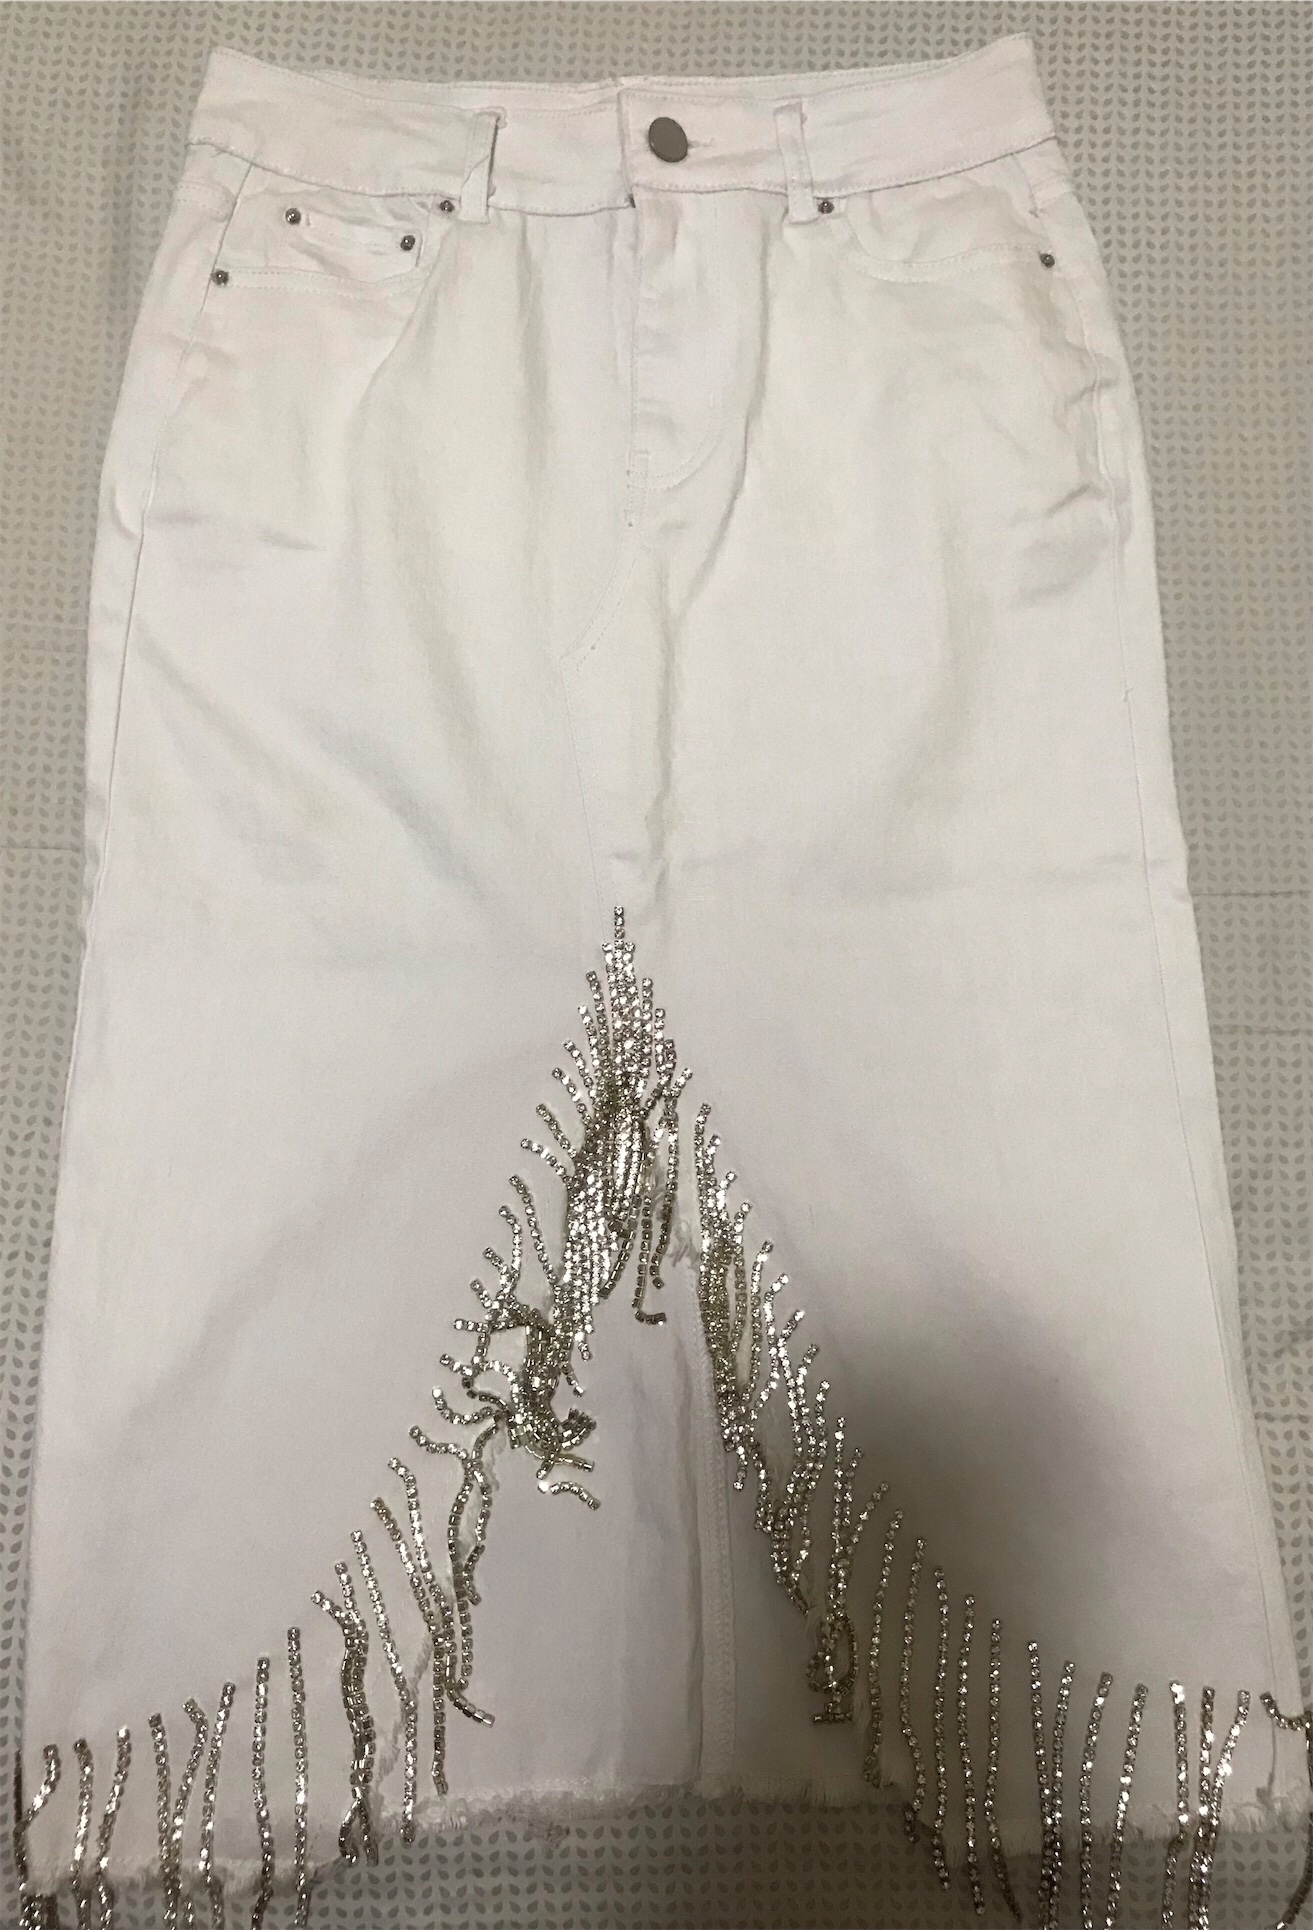 ropa para mujer - Falda blanca en jeans con detalles de piedras.
Size L